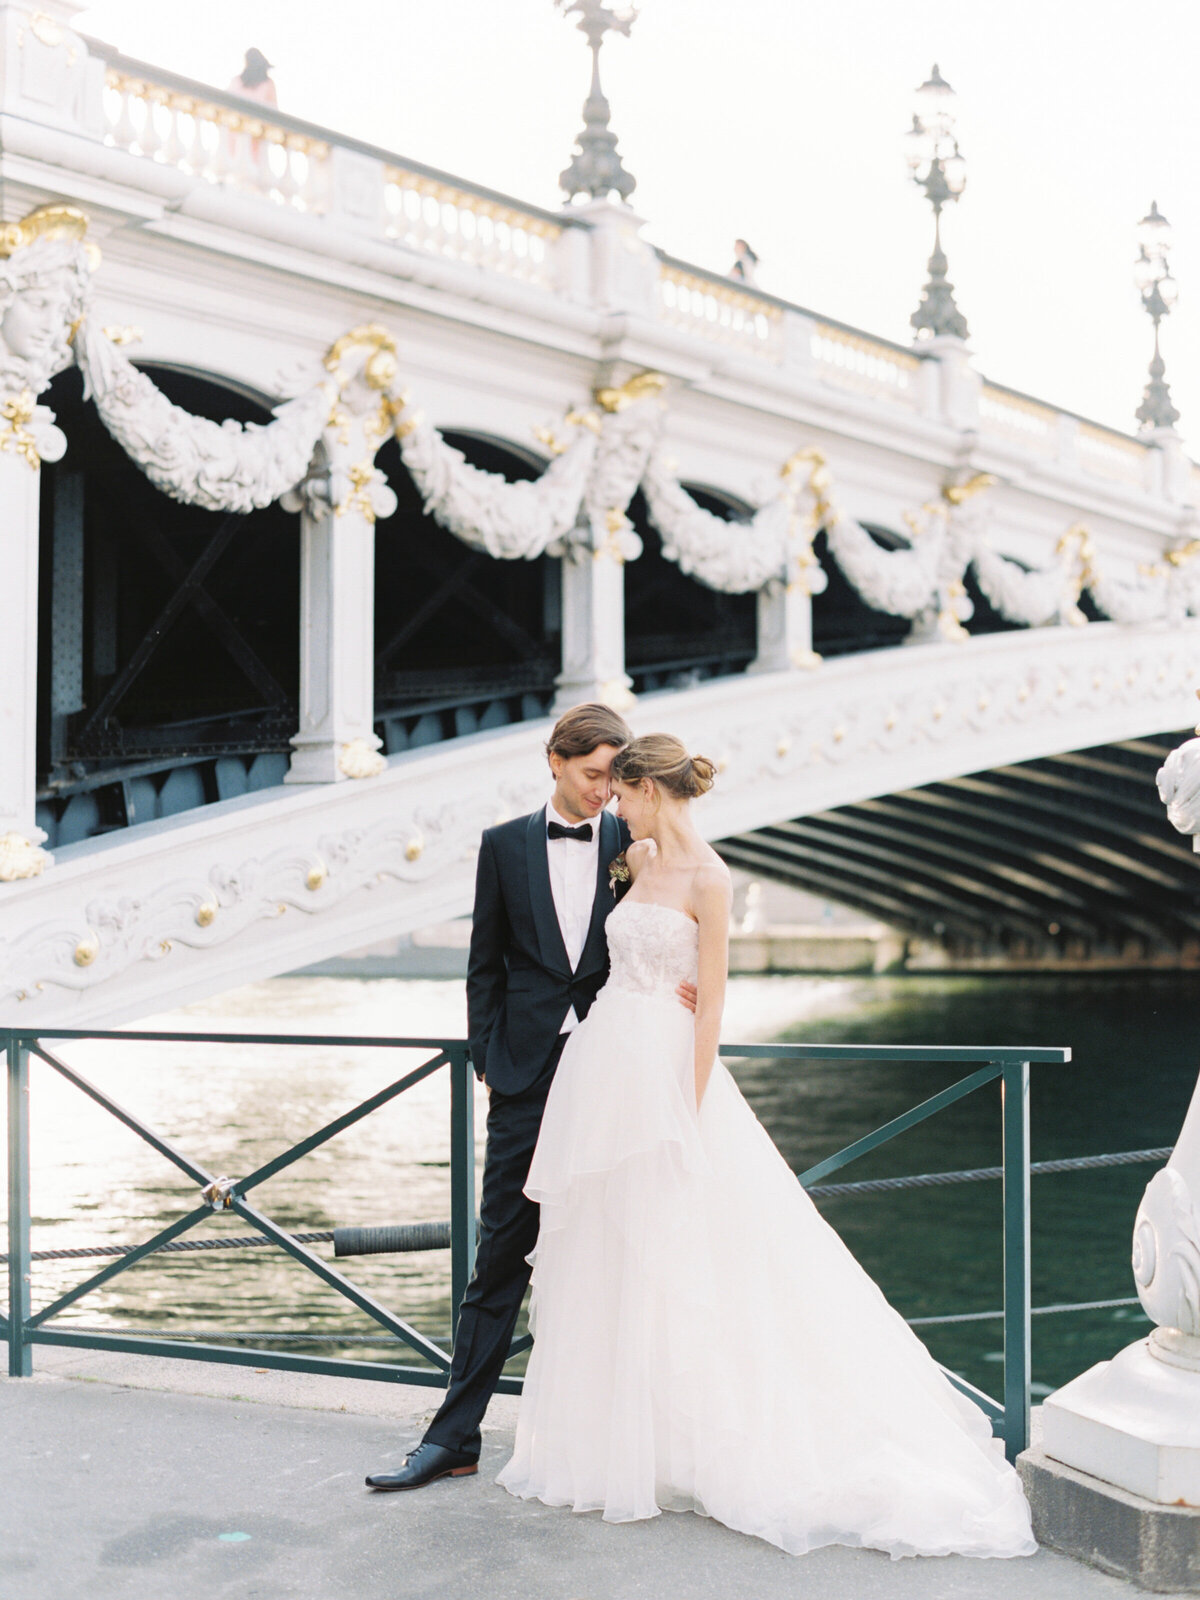 petit-palais-elopement-paris-wedding-photographer-mackenzie-reiter-photography-pont-alexandre-bridge-paris-france-19